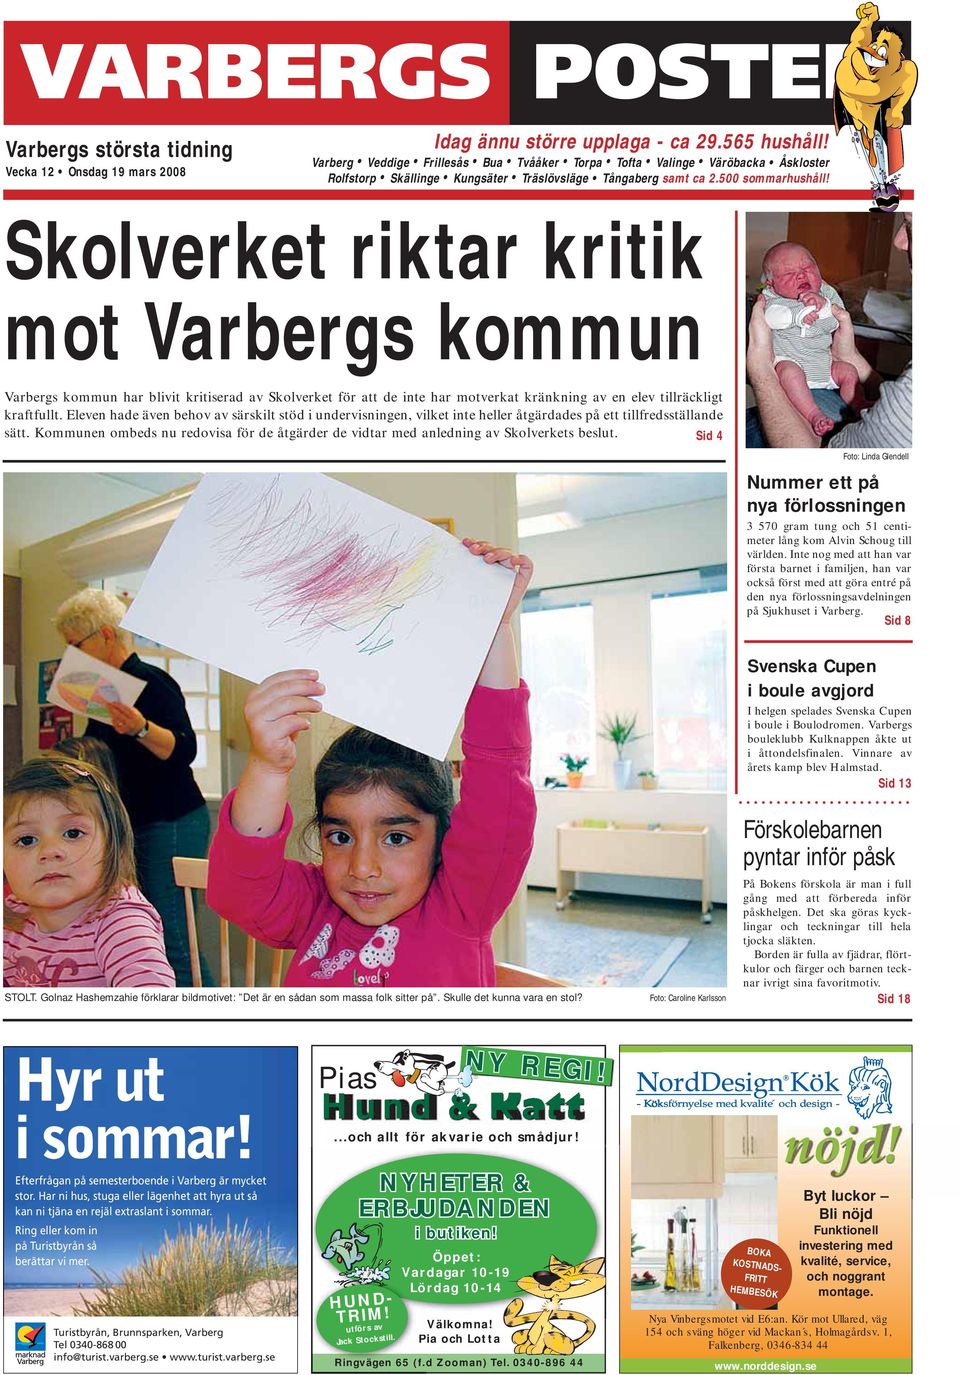 Skolverket riktar kritik mot Varbergs kommun Varbergs kommun har blivit kritiserad av Skolverket för att de inte har motverkat kränkning av en elev tillräckligt kraftfullt.